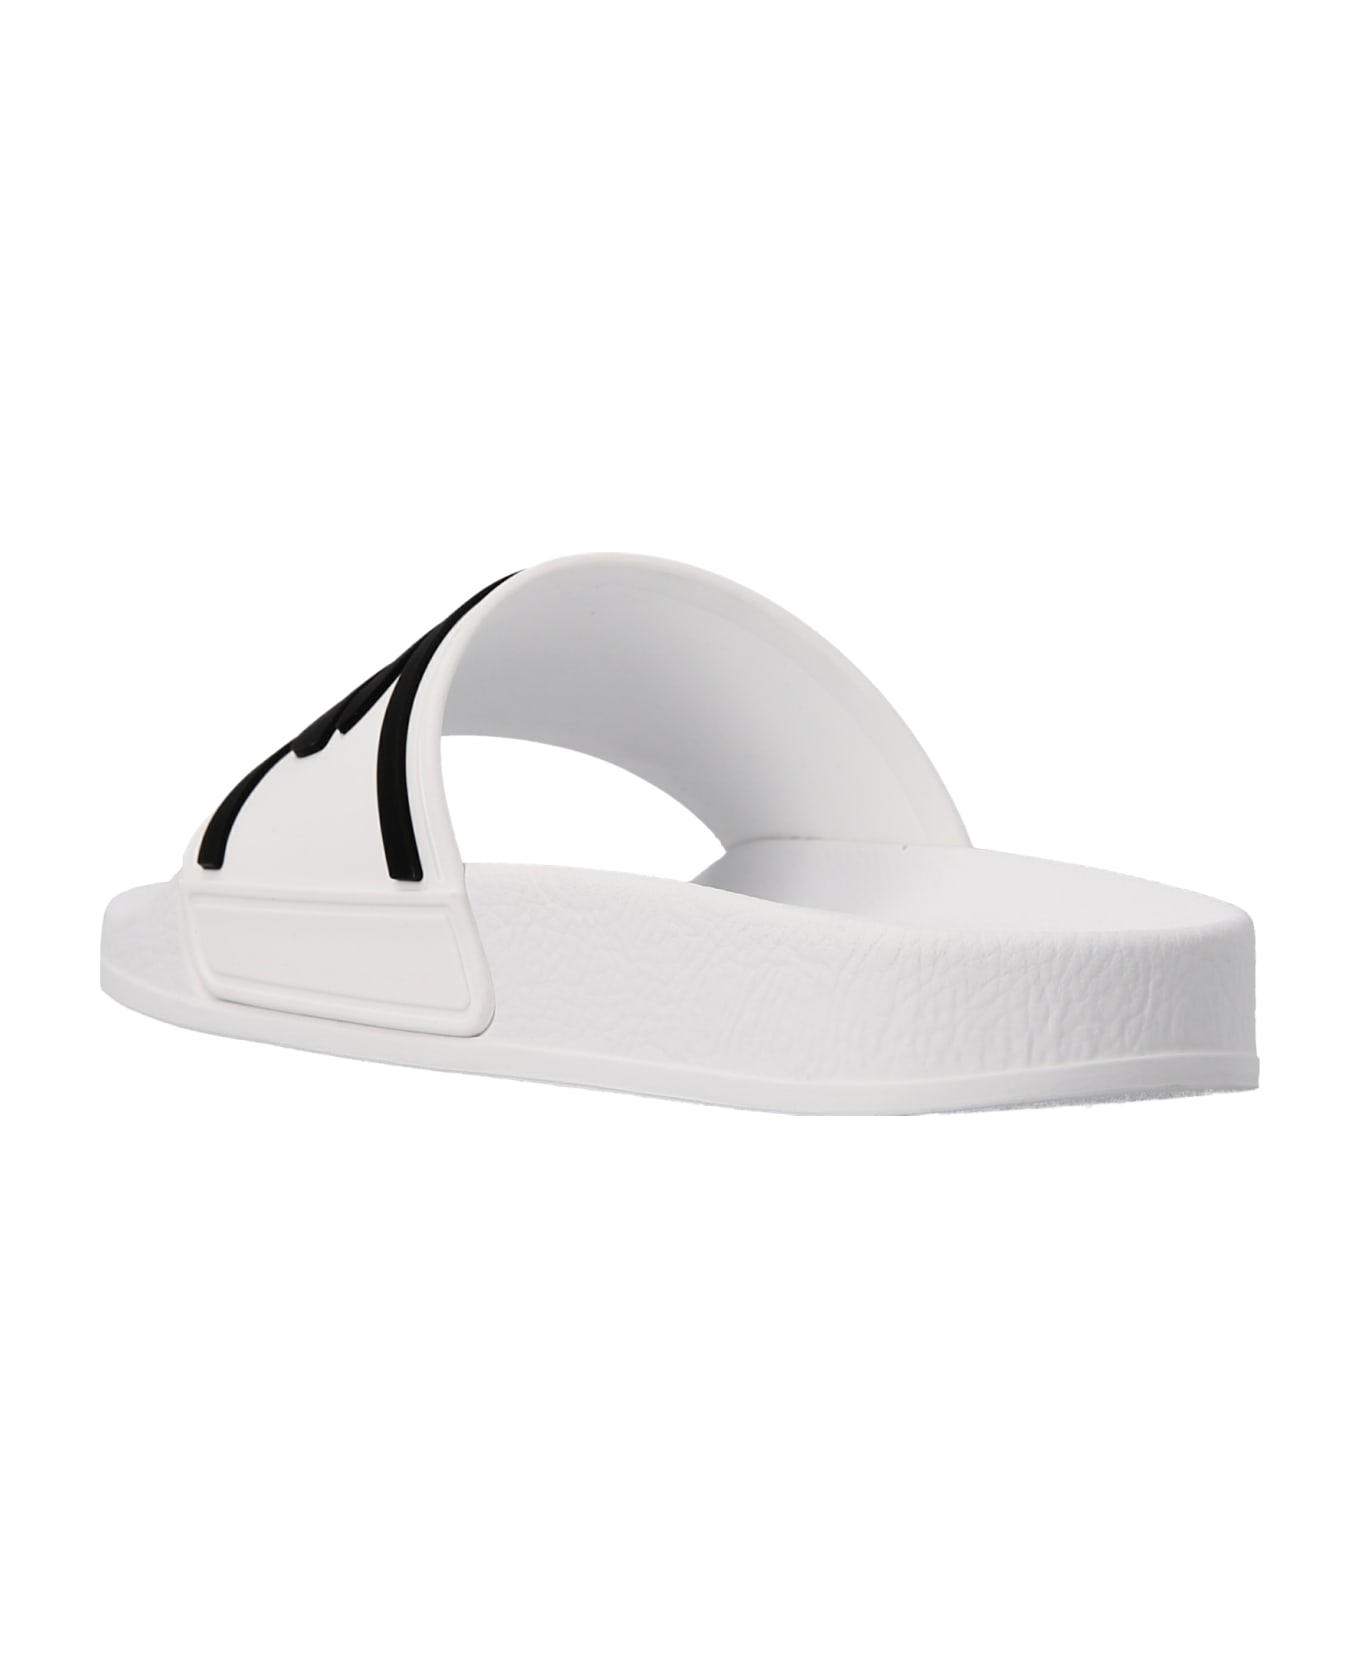 Dolce & Gabbana Logo Slides - White/Black シューズ